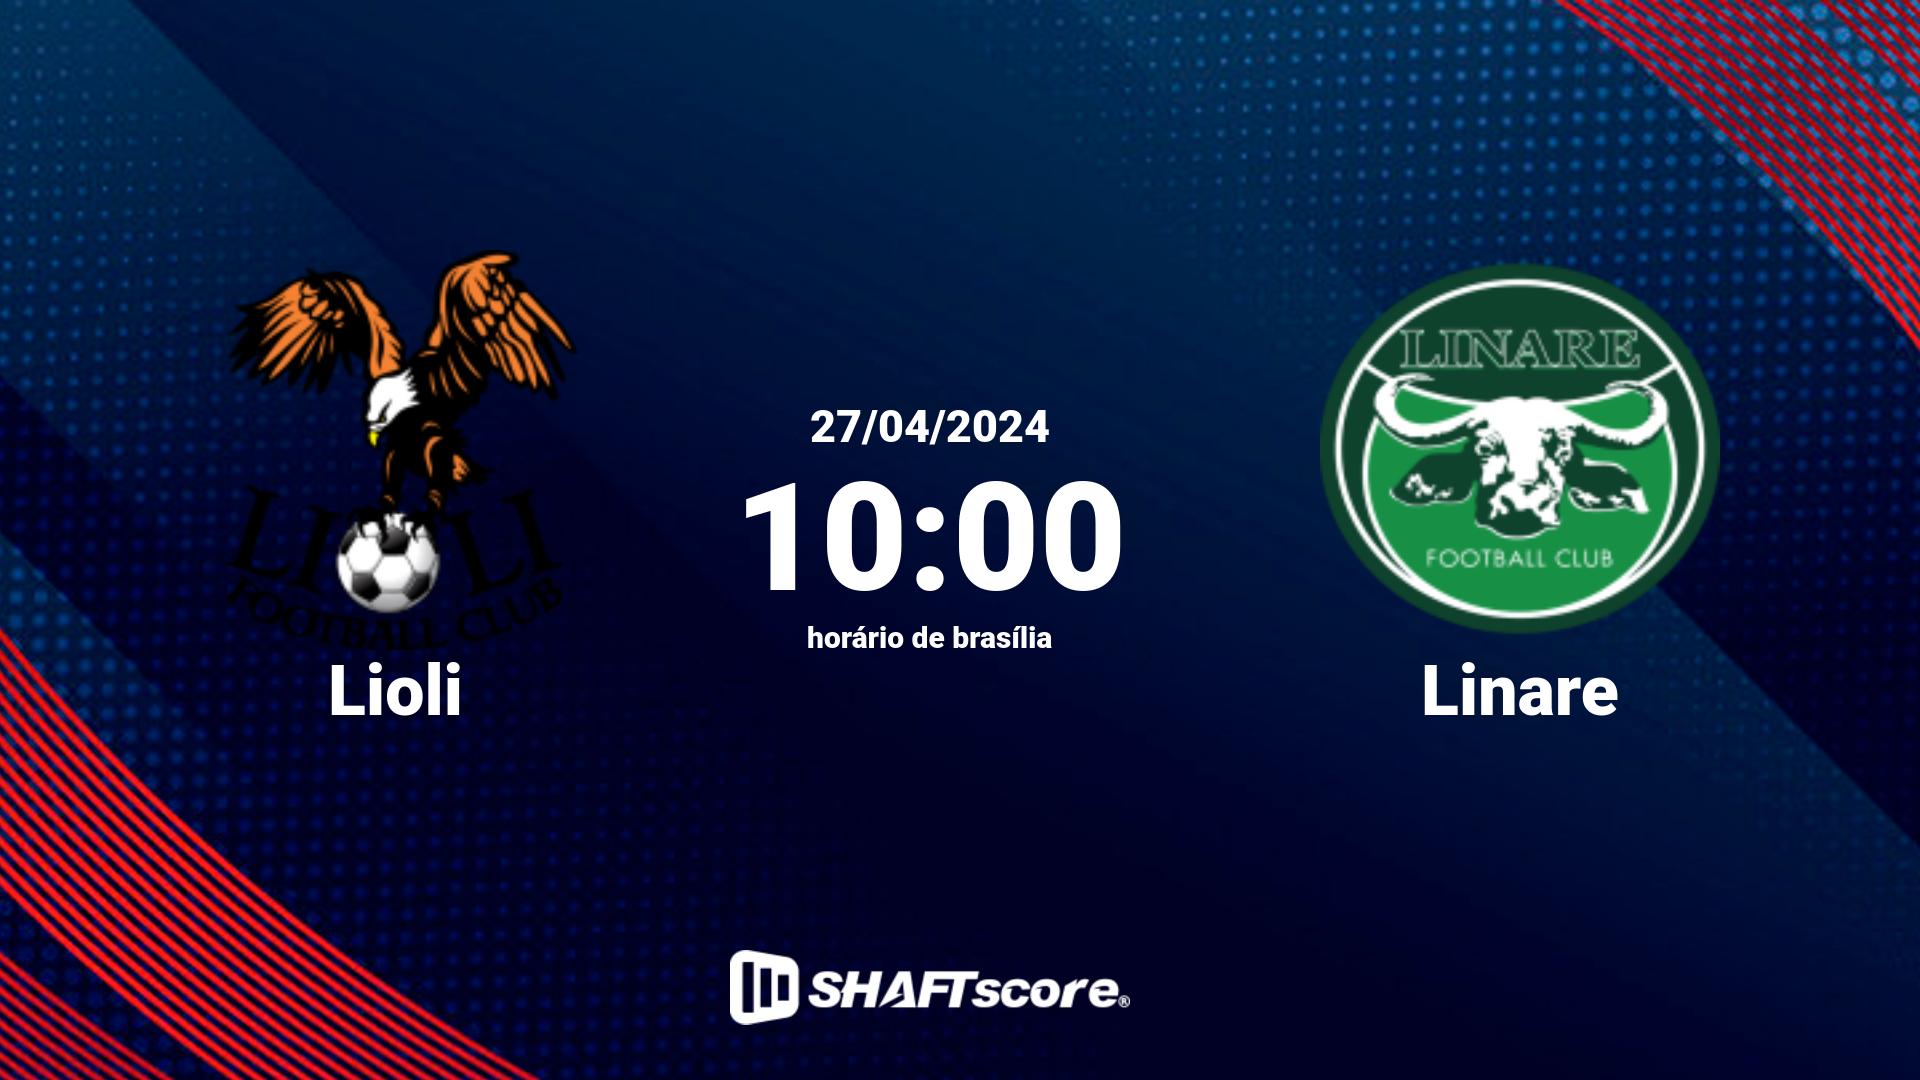 Estatísticas do jogo Lioli vs Linare 27.04 10:00